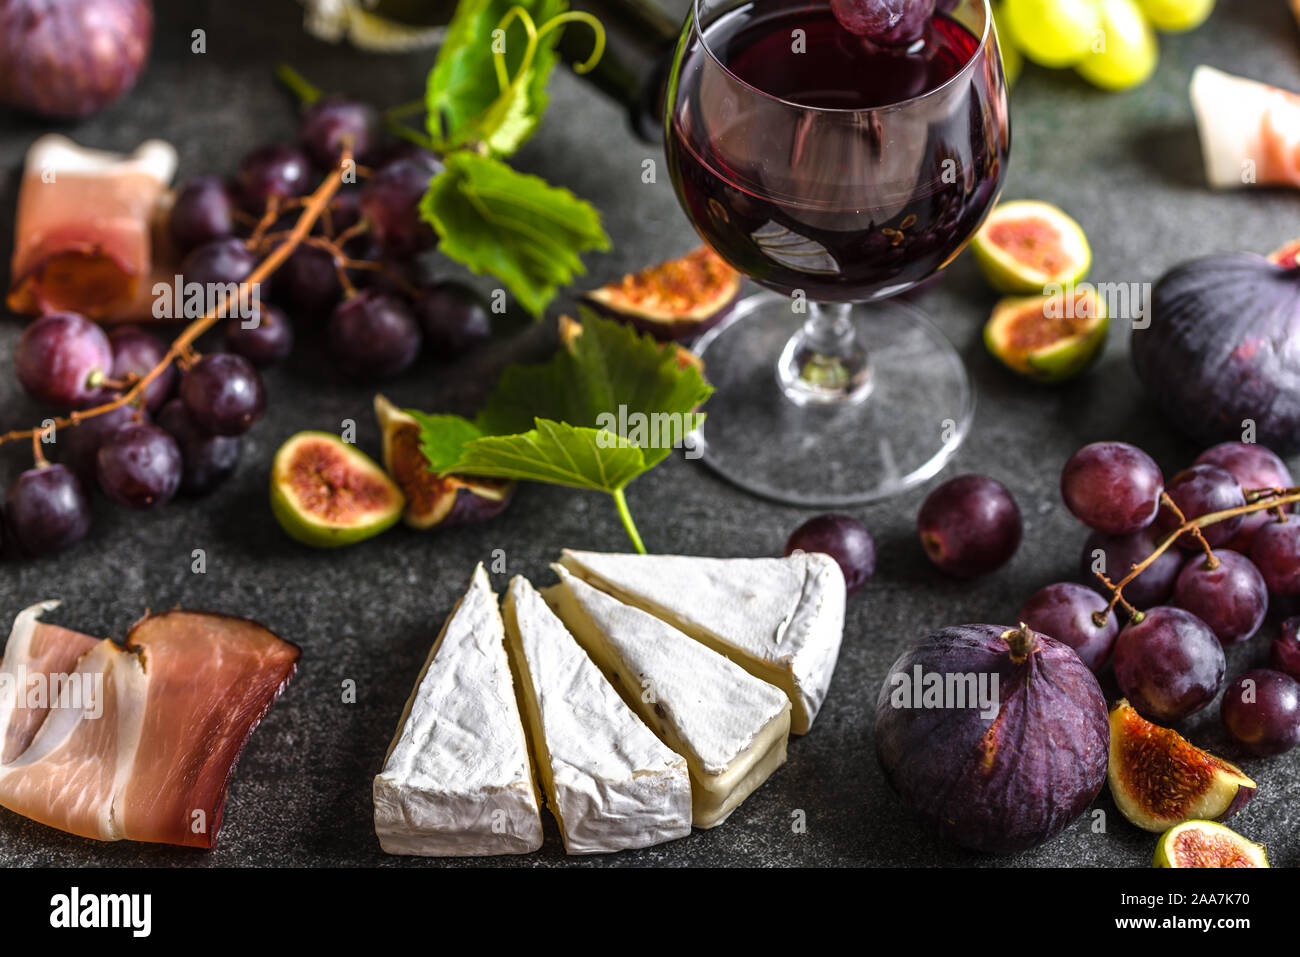 Buffet mit Wein Snack oder französische Vorspeise. Glas Rotwein, Käse, Fleisch und Obst. Stockfoto